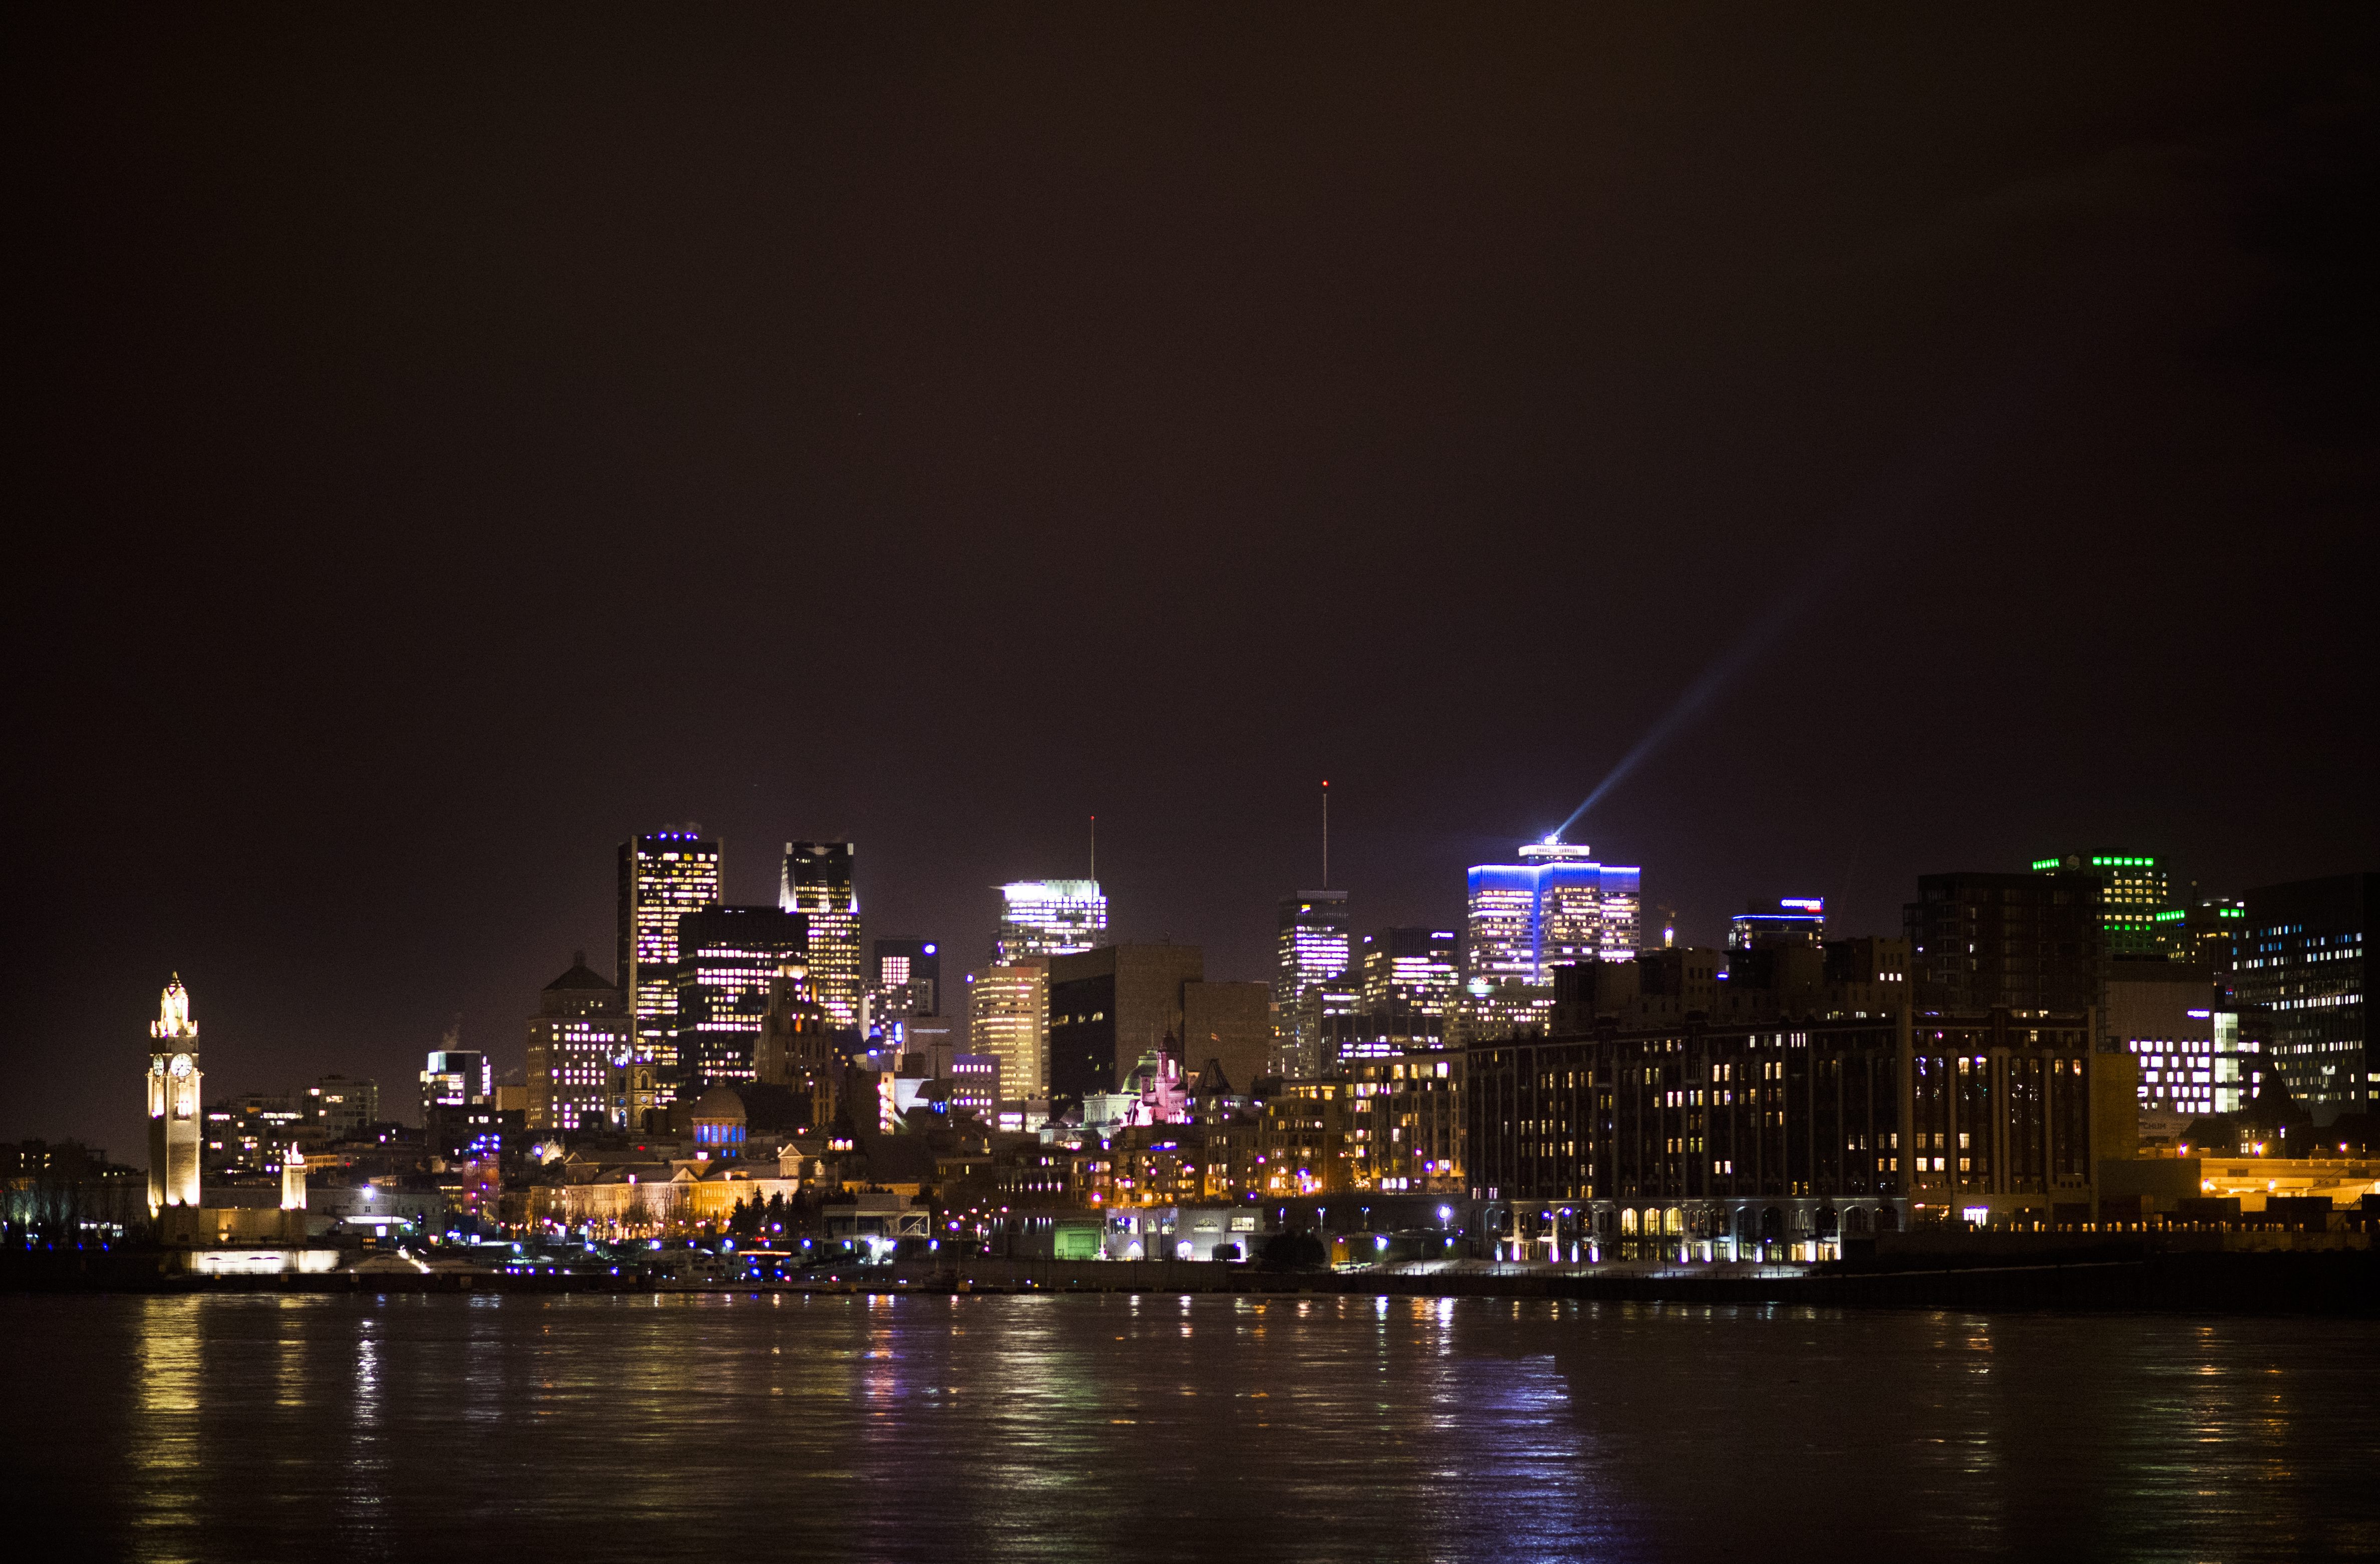 Montreal vises om natten tirsdag den 21. februar 2017.